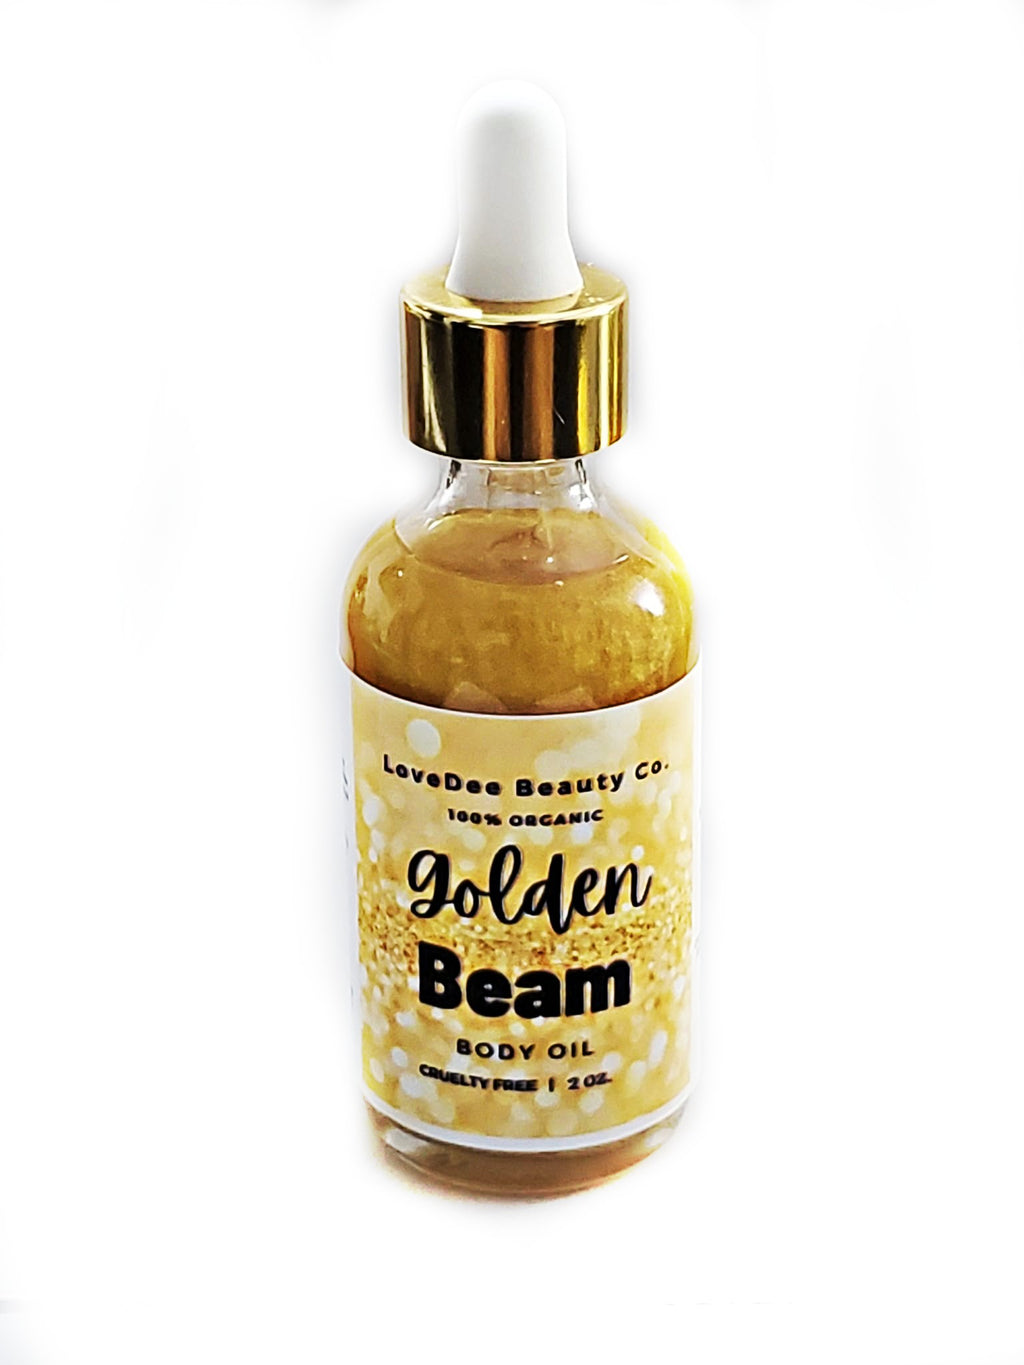 Golden Beam Body Oil